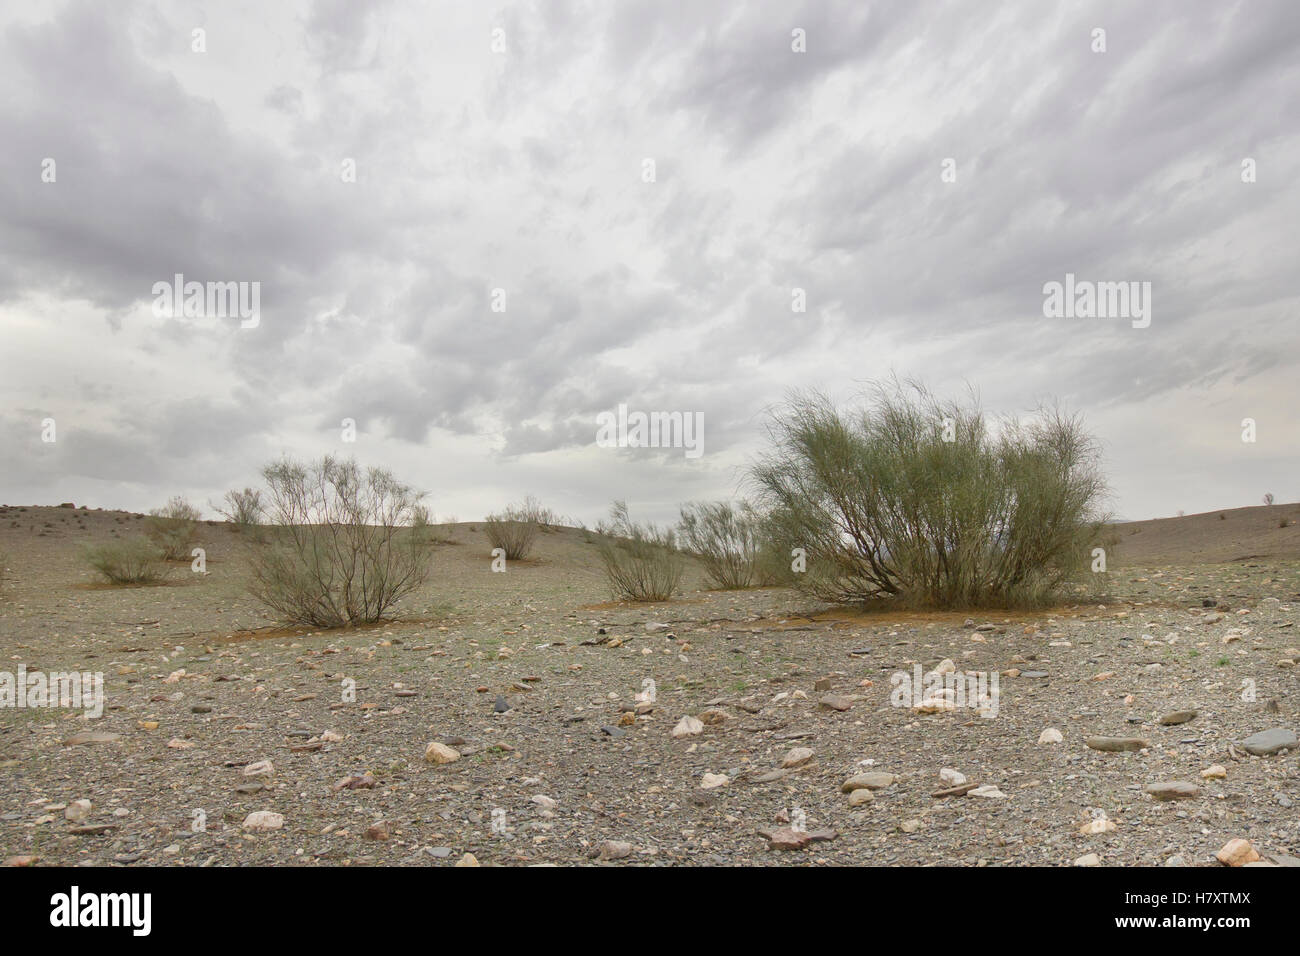 Deserto di Tabernas con Retama sphaerocarpa nel giorno nuvoloso. Foto Stock